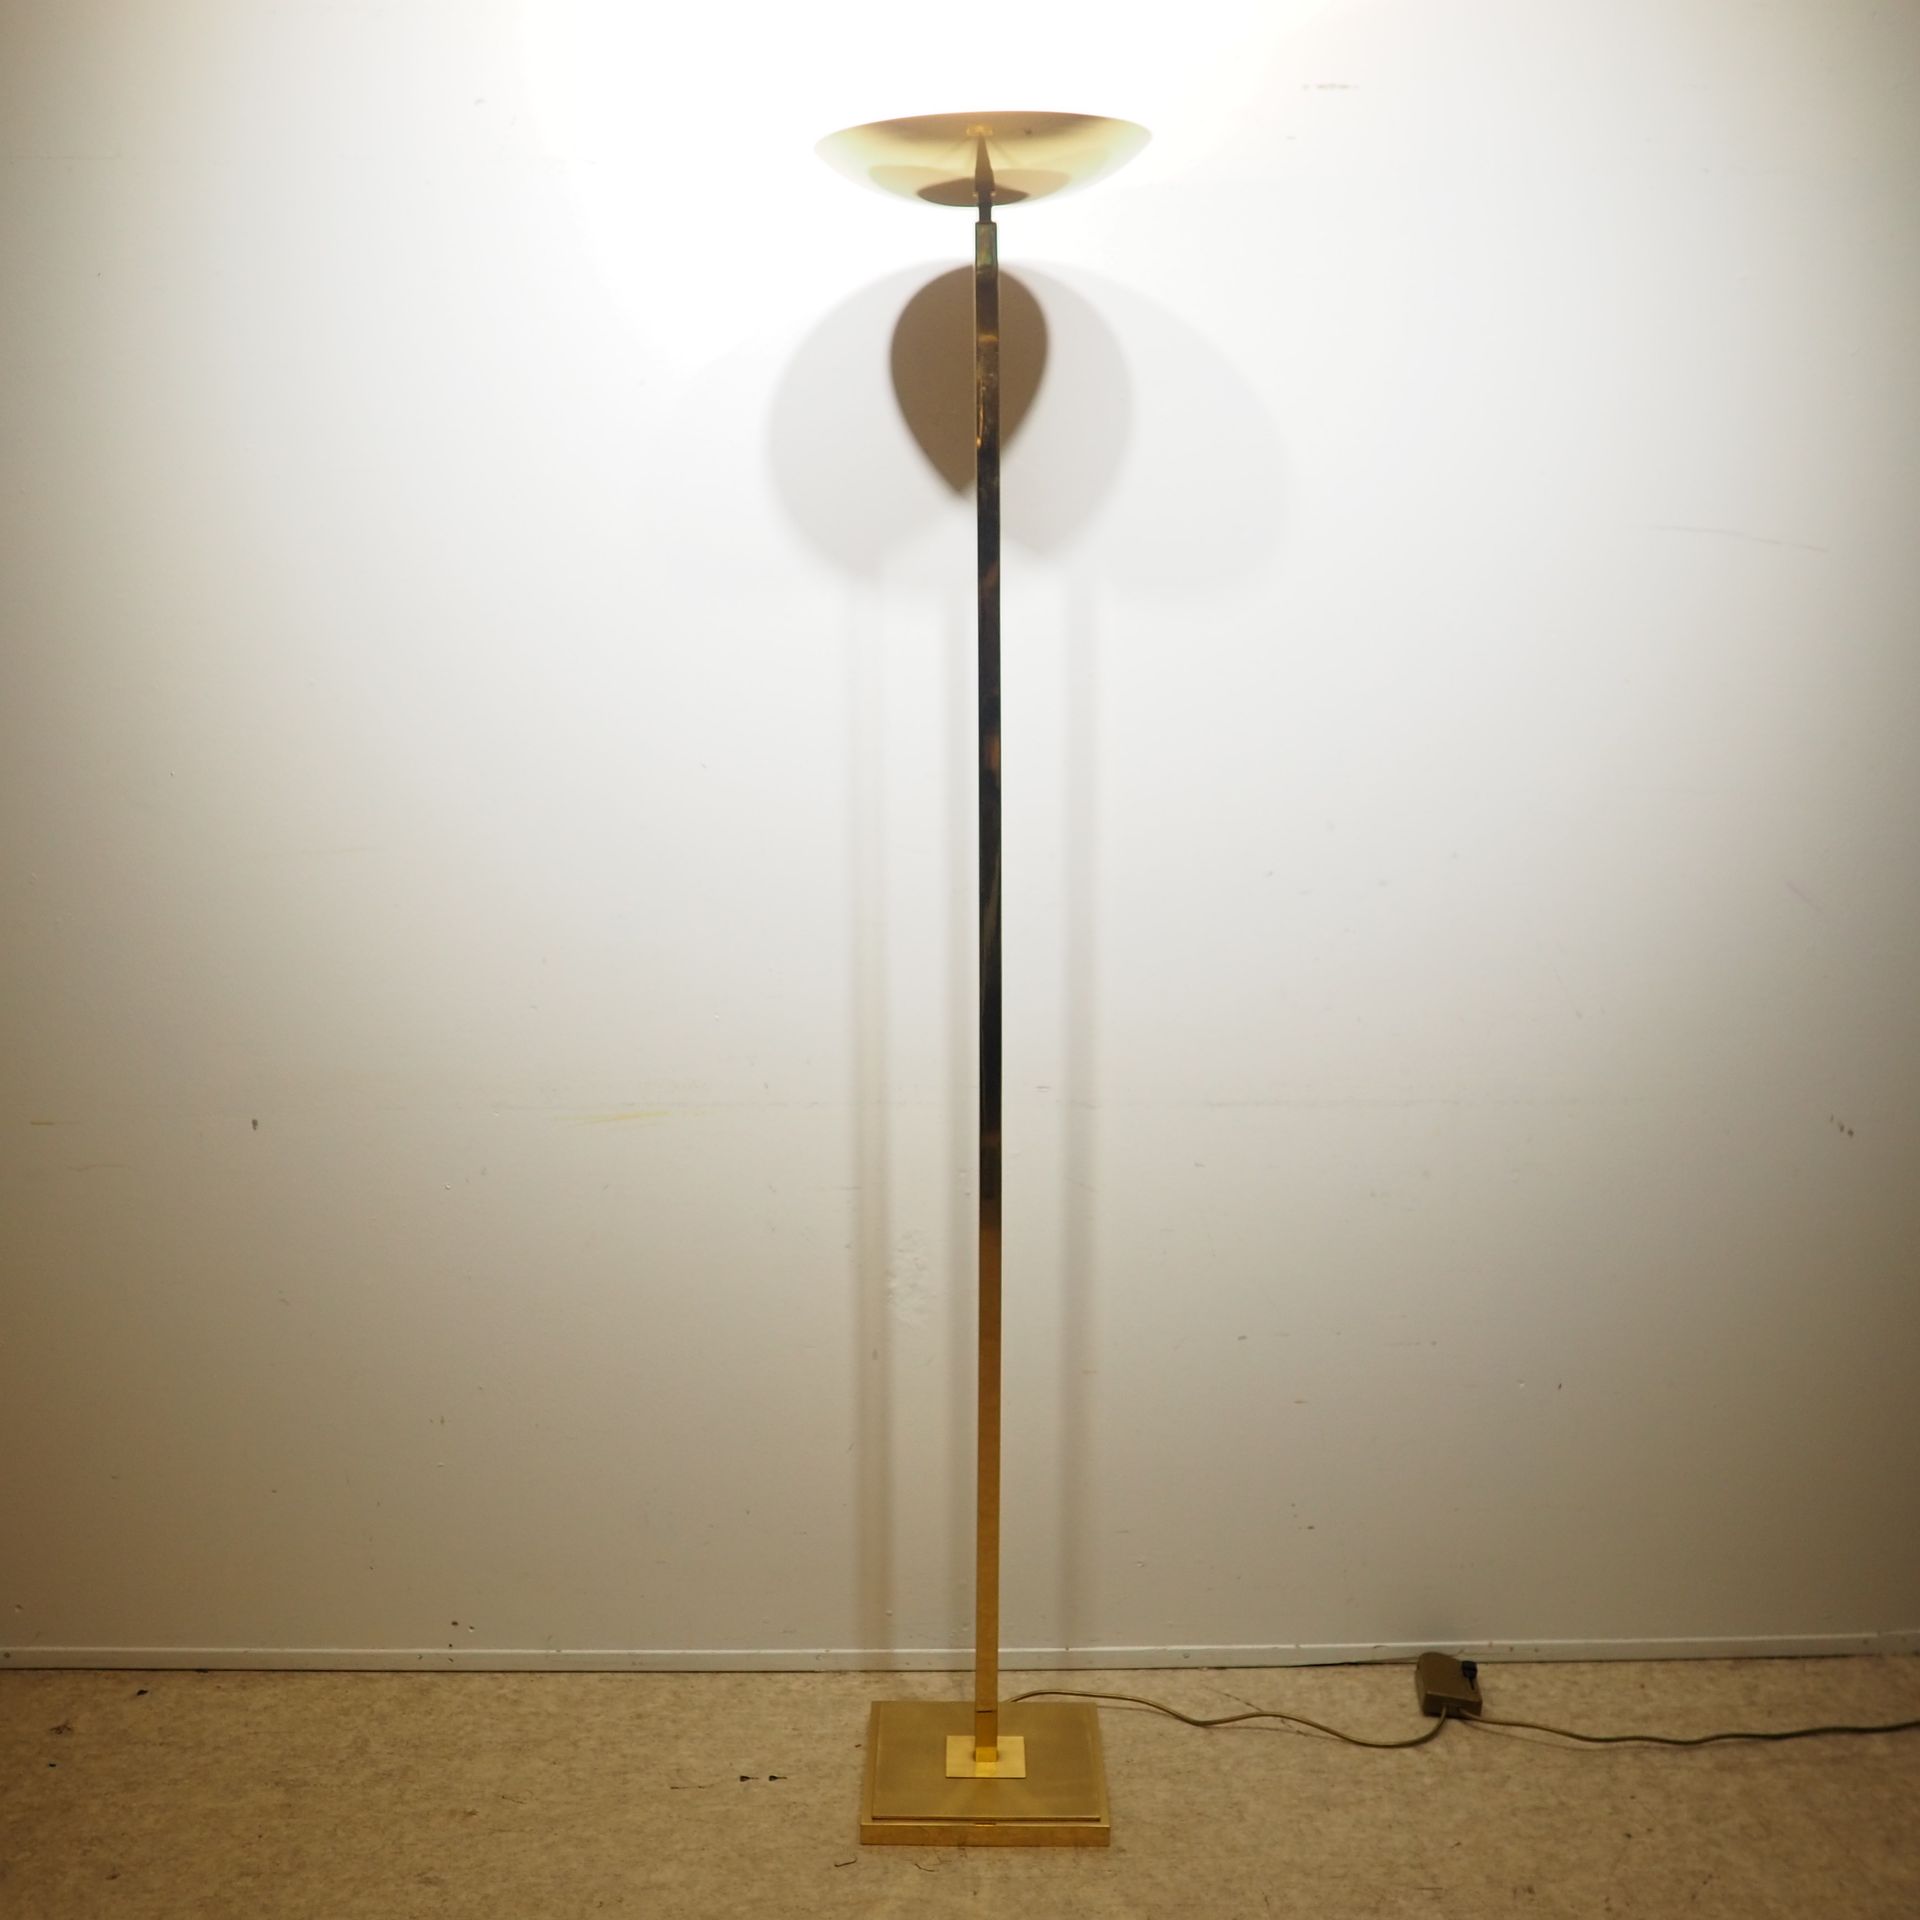 Lampadaire halogène vers 1980 Halogen floor lamp around 1980 : Brass shaft with &hellip;